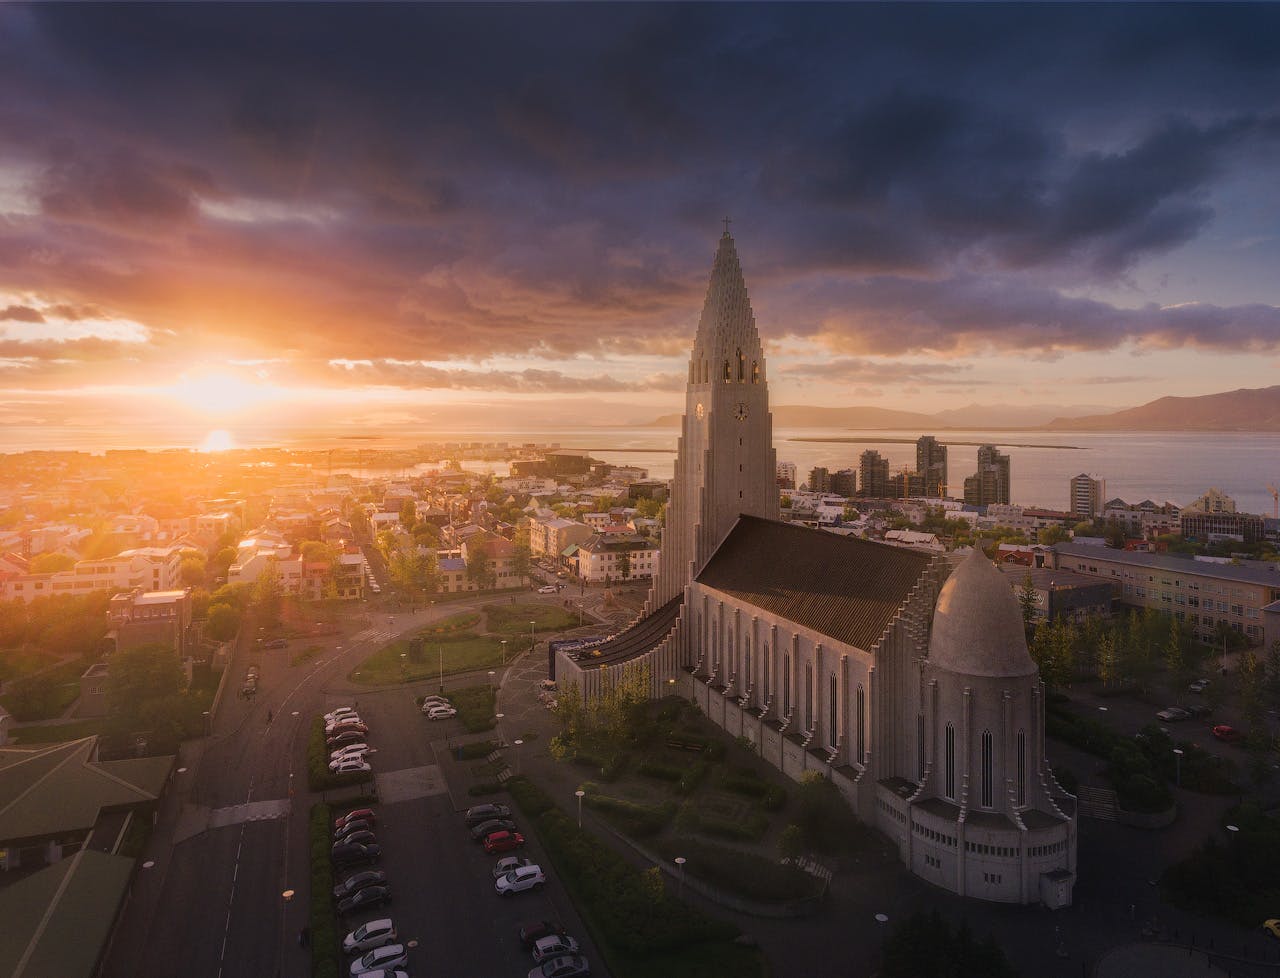 โบสถ์ฮัลล์กรีมสคิร์คยาเป็นโบสถ์นิกายลูเธอแรนในเมืองหลวงของประเทศไอซ์แลนด์.